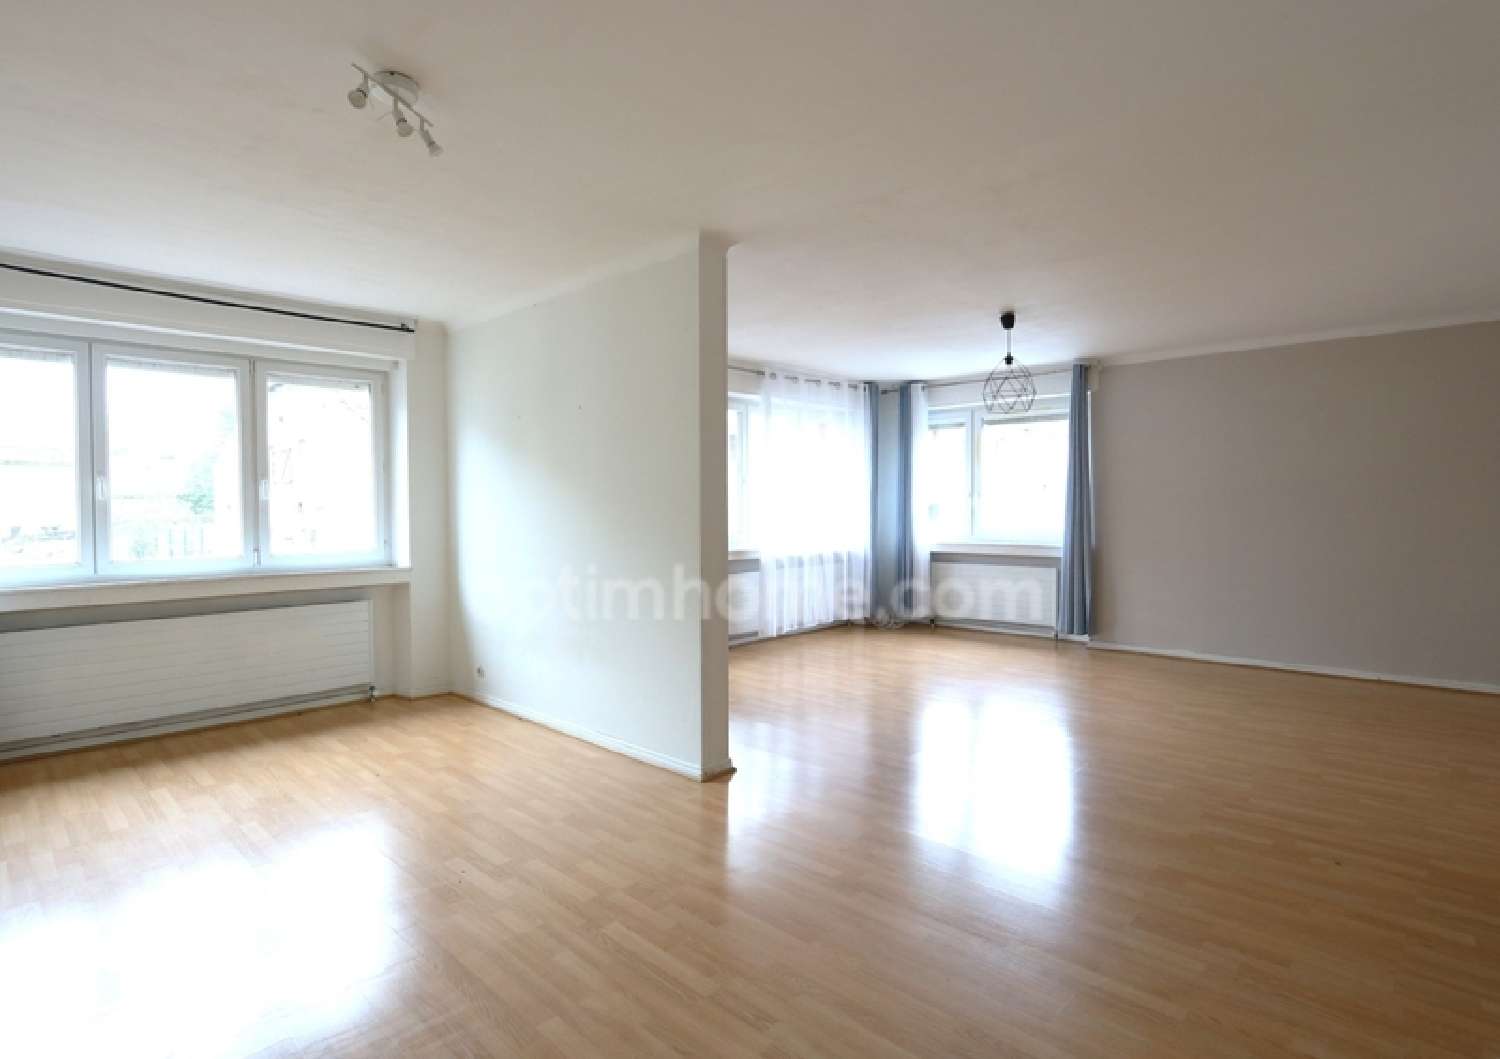  for sale apartment Gandrange Moselle 1